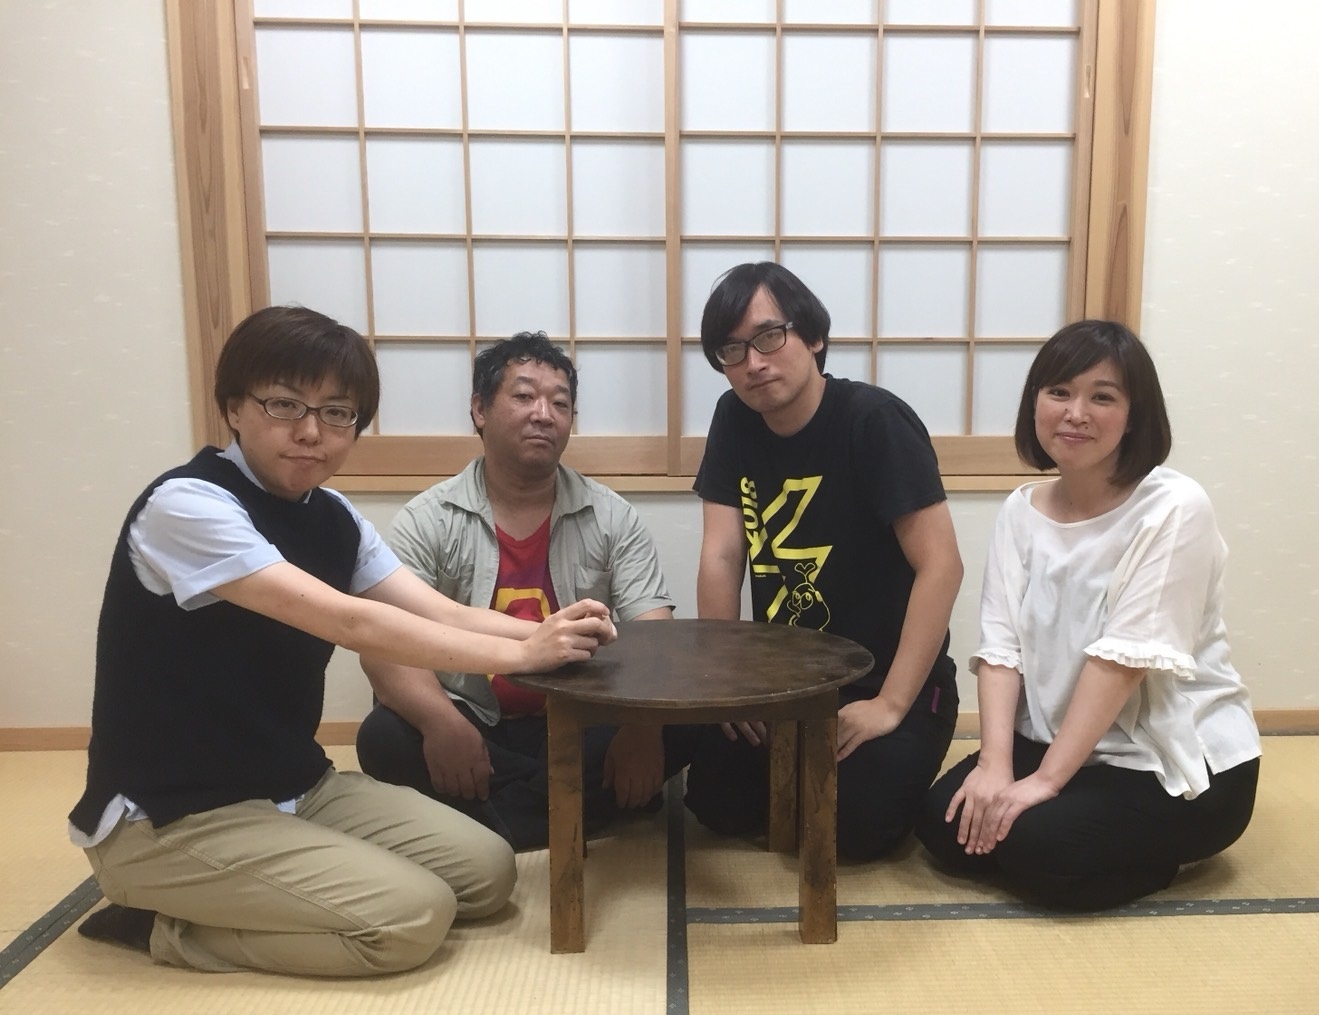 『隣にいても一人』メイン出演者。（左から）椎葉みず穂、平野浩治、大迫旭洋、松本麻衣子